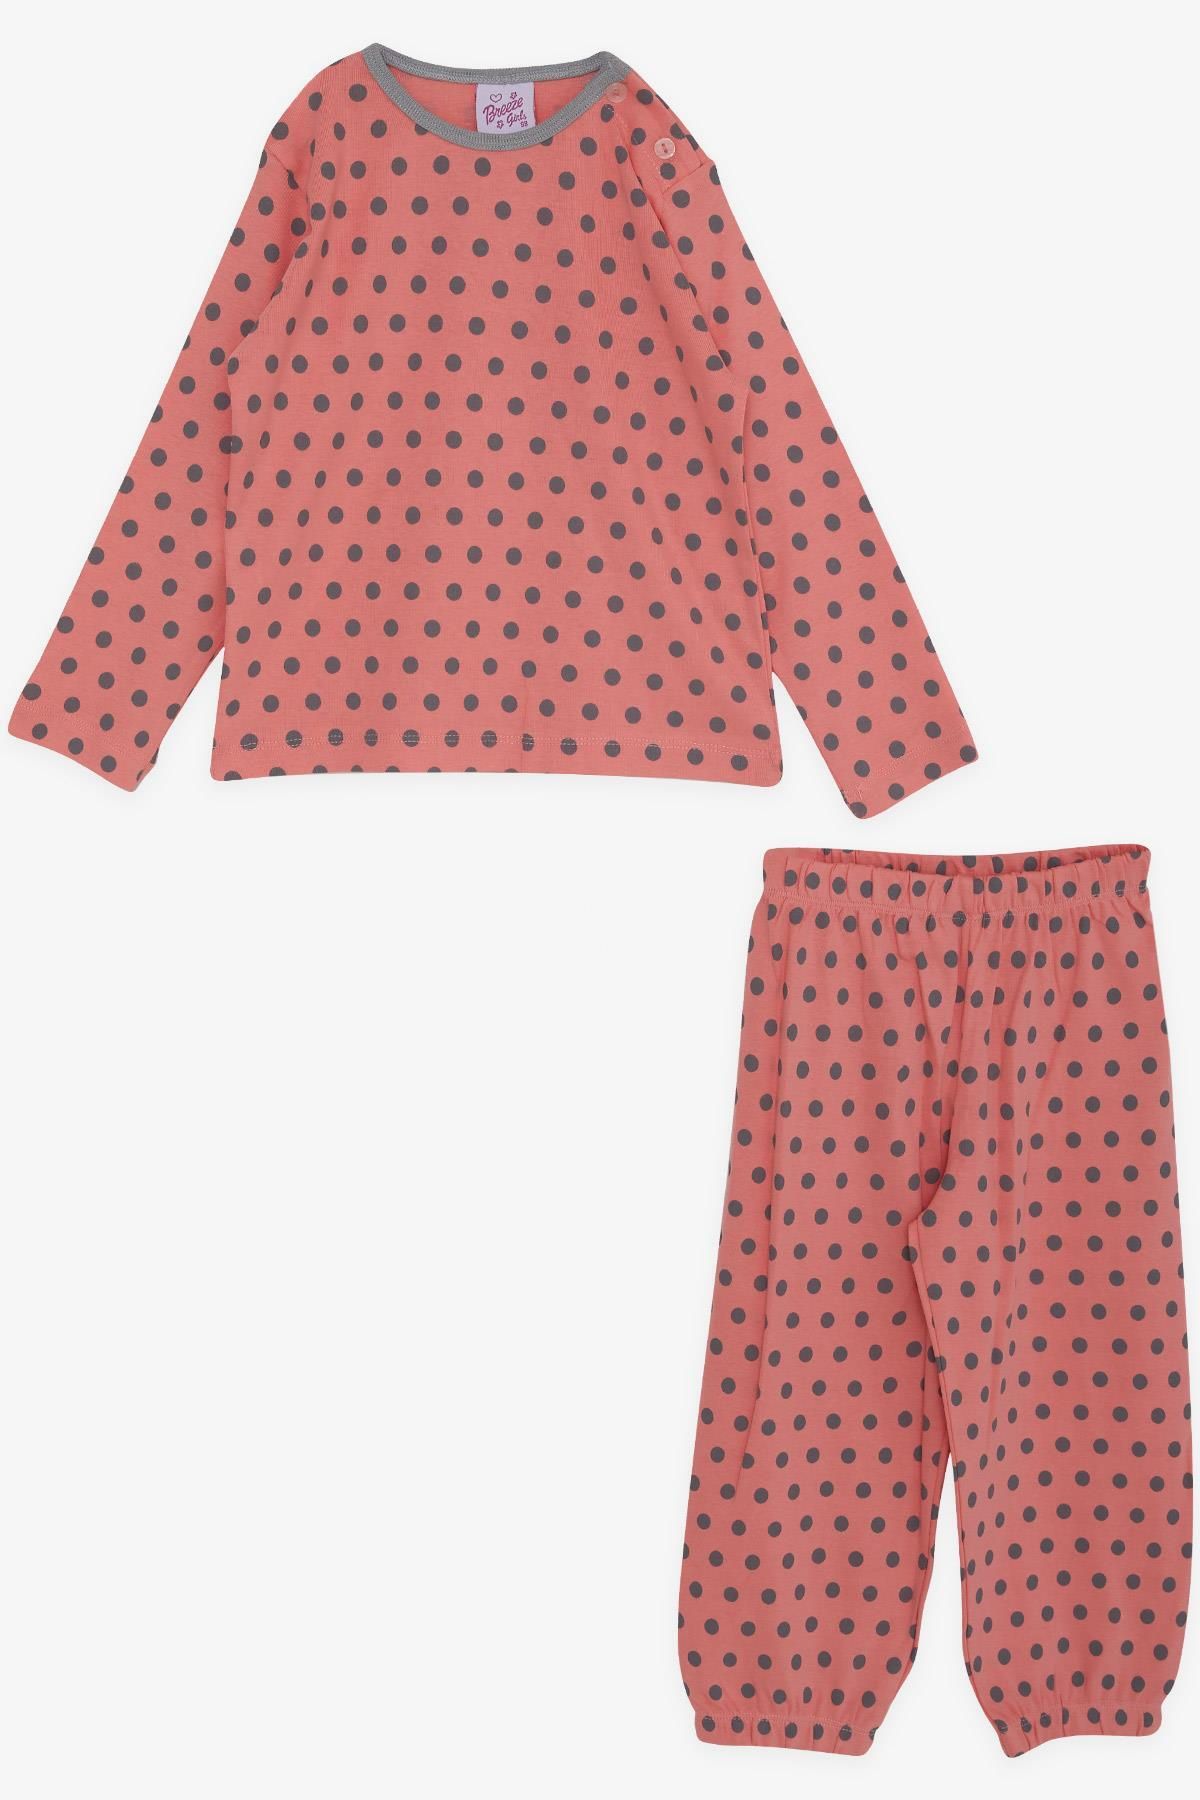 Breeze Kız Bebek Pijama Takımı Puantiye Desenli 9 Ay-3 Yaş, Mercan